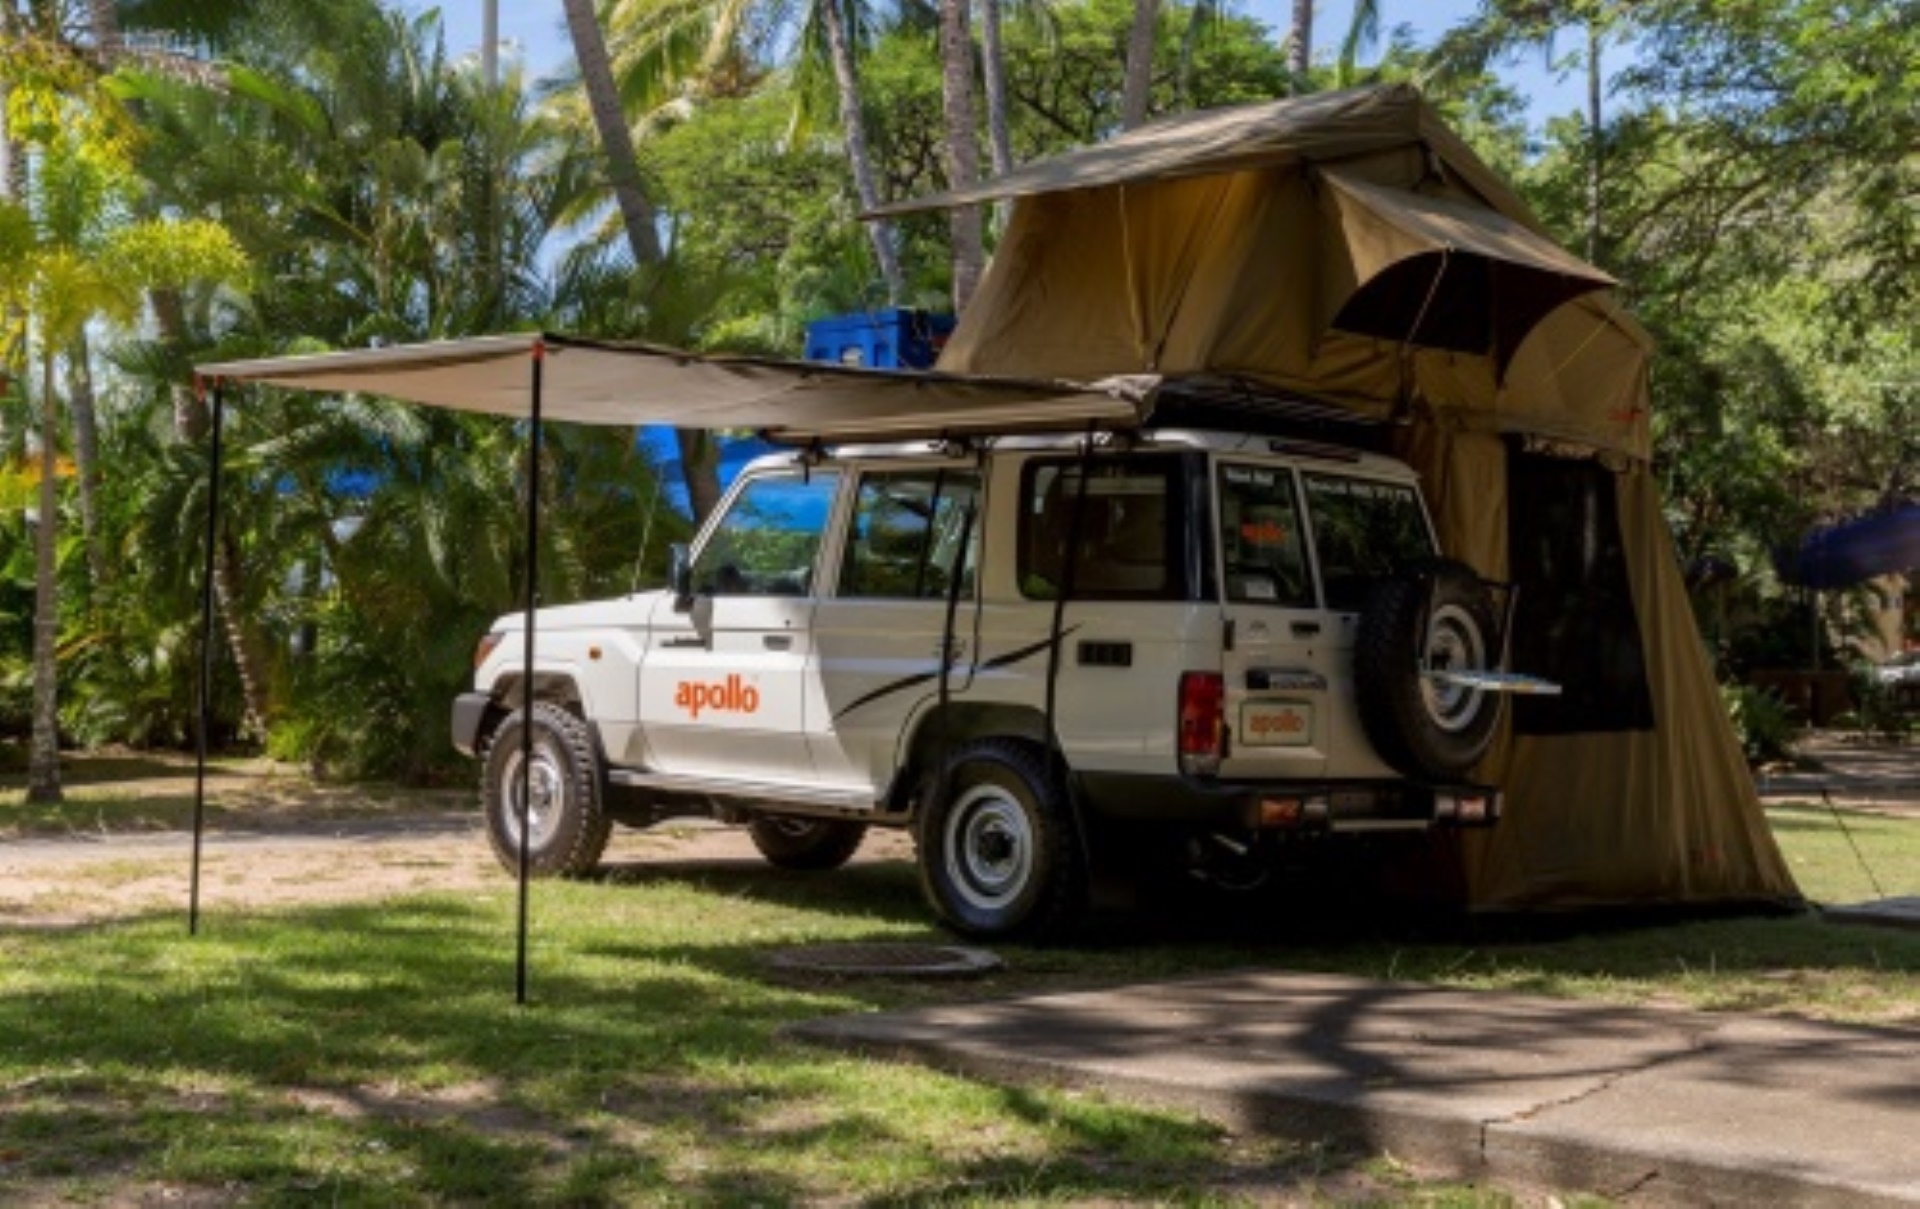 Apollo Overlander 4WD Camper Australie